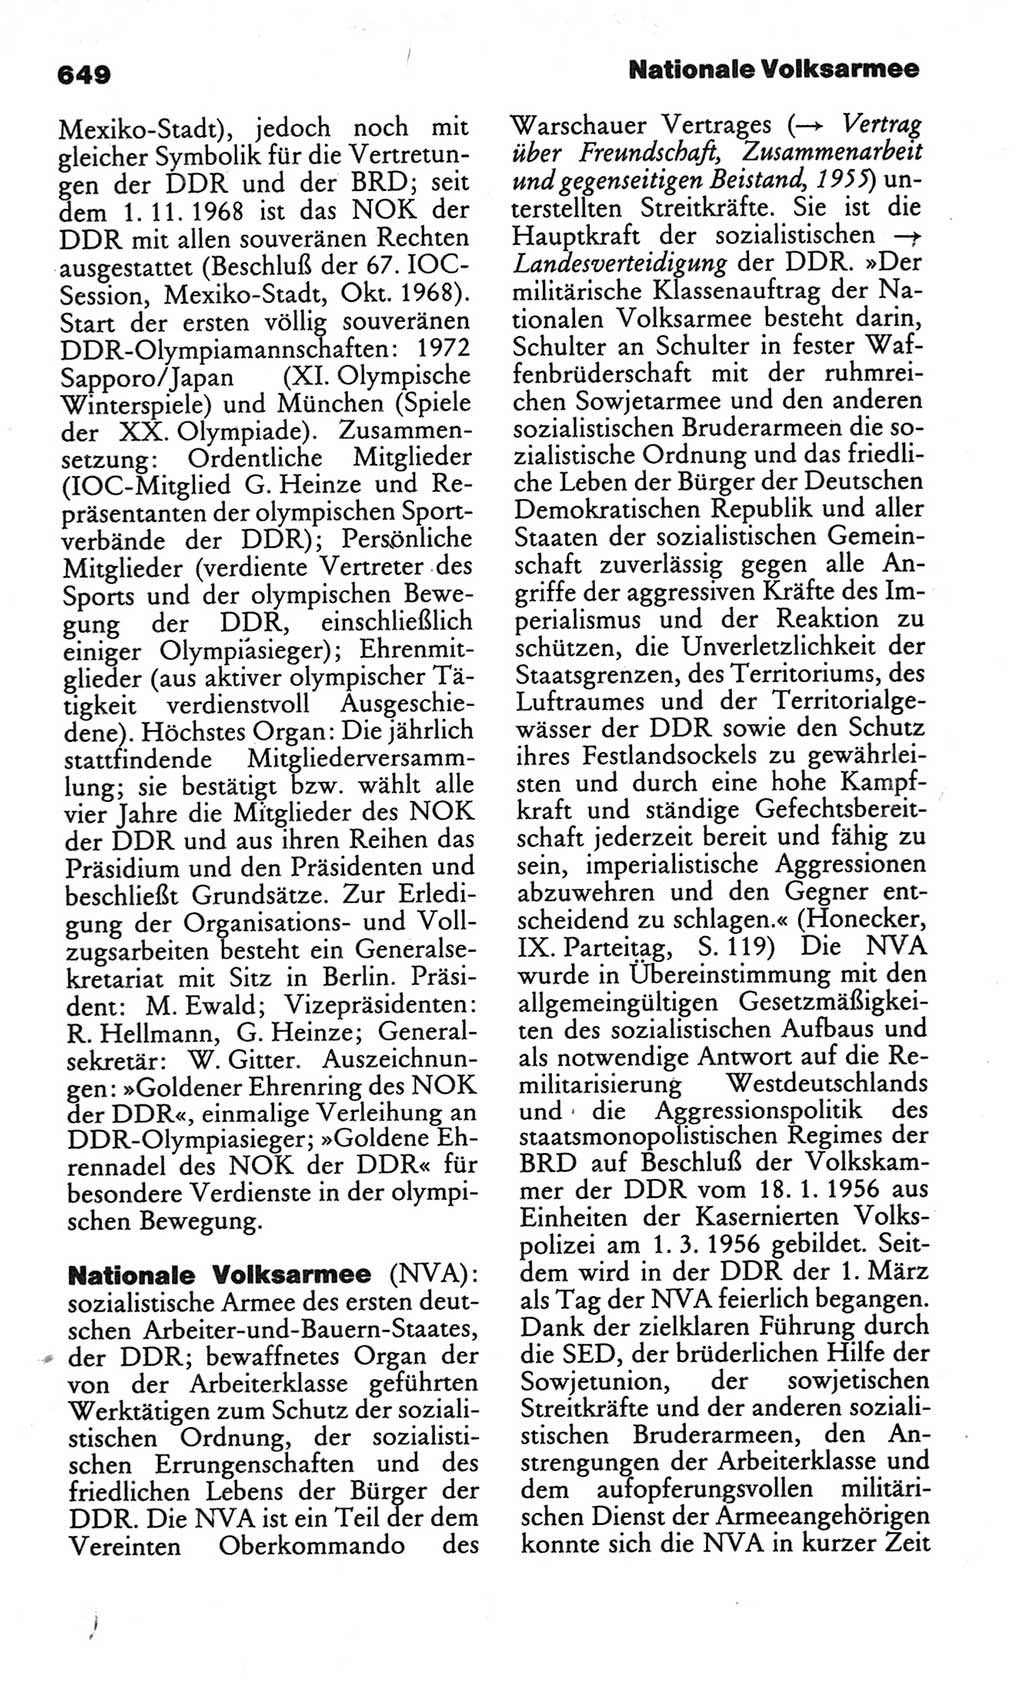 Kleines politisches Wörterbuch [Deutsche Demokratische Republik (DDR)] 1986, Seite 649 (Kl. pol. Wb. DDR 1986, S. 649)